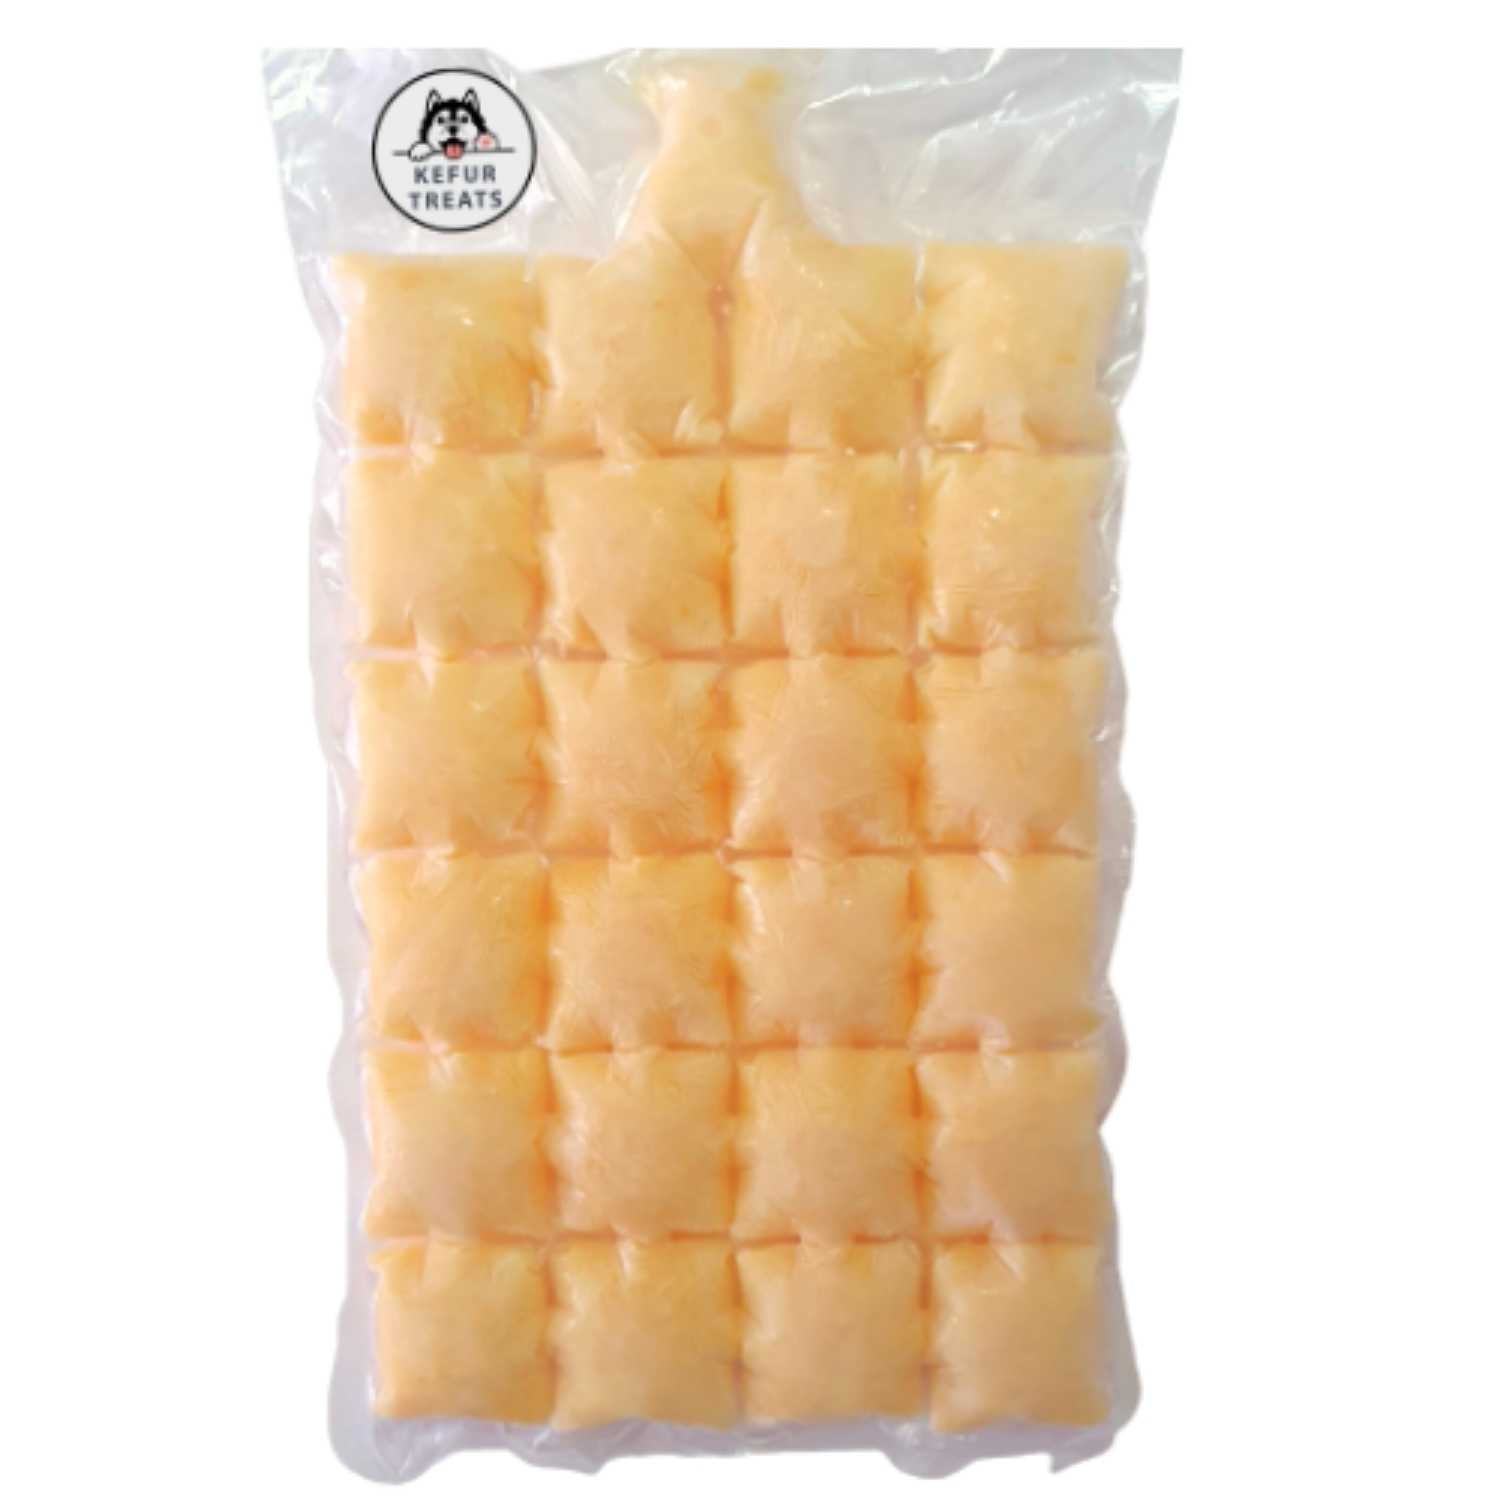 KEFUR TREATS - PUMPKIN Goat Milk Kefir Frozen Pack (24 Cubes) - Pet Treats